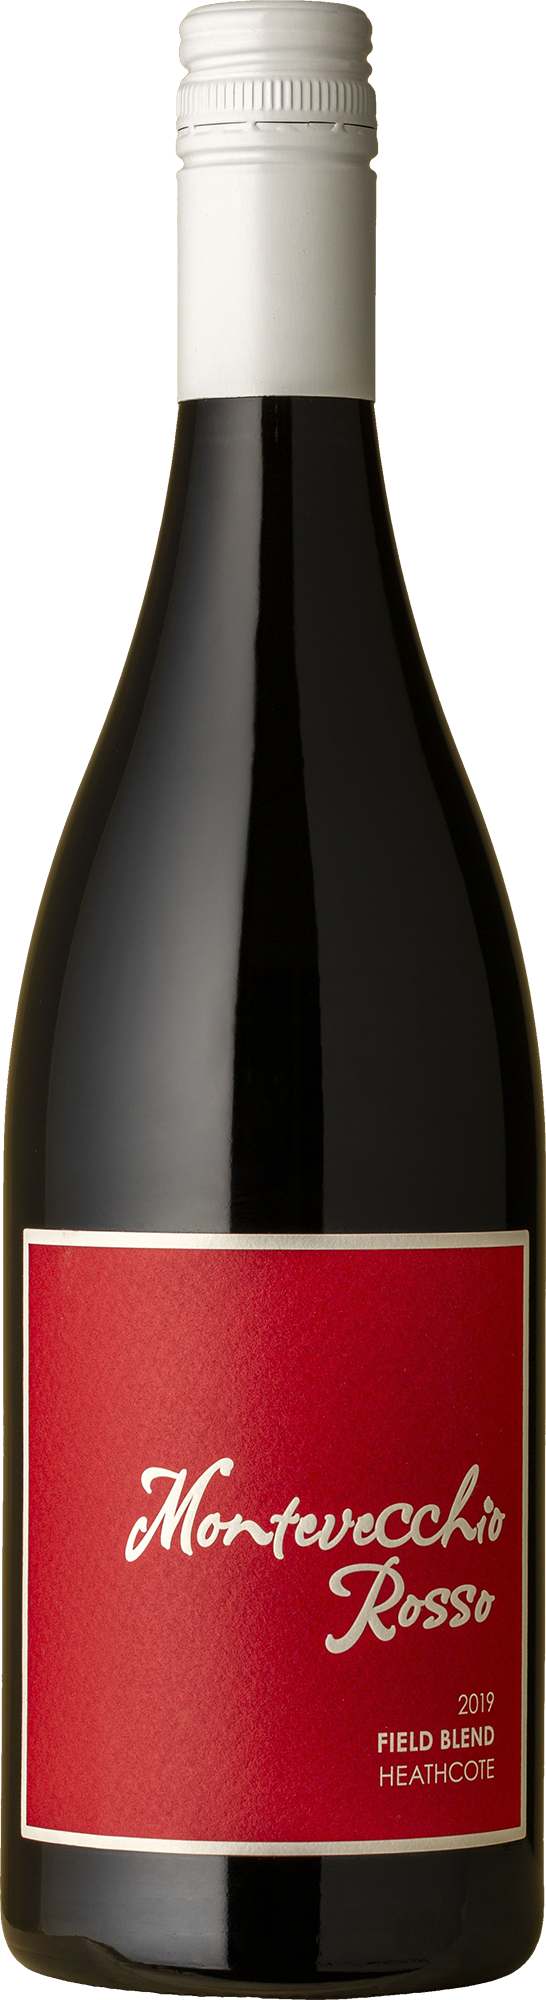 Montevecchio - Rosso 2019 Red Wine